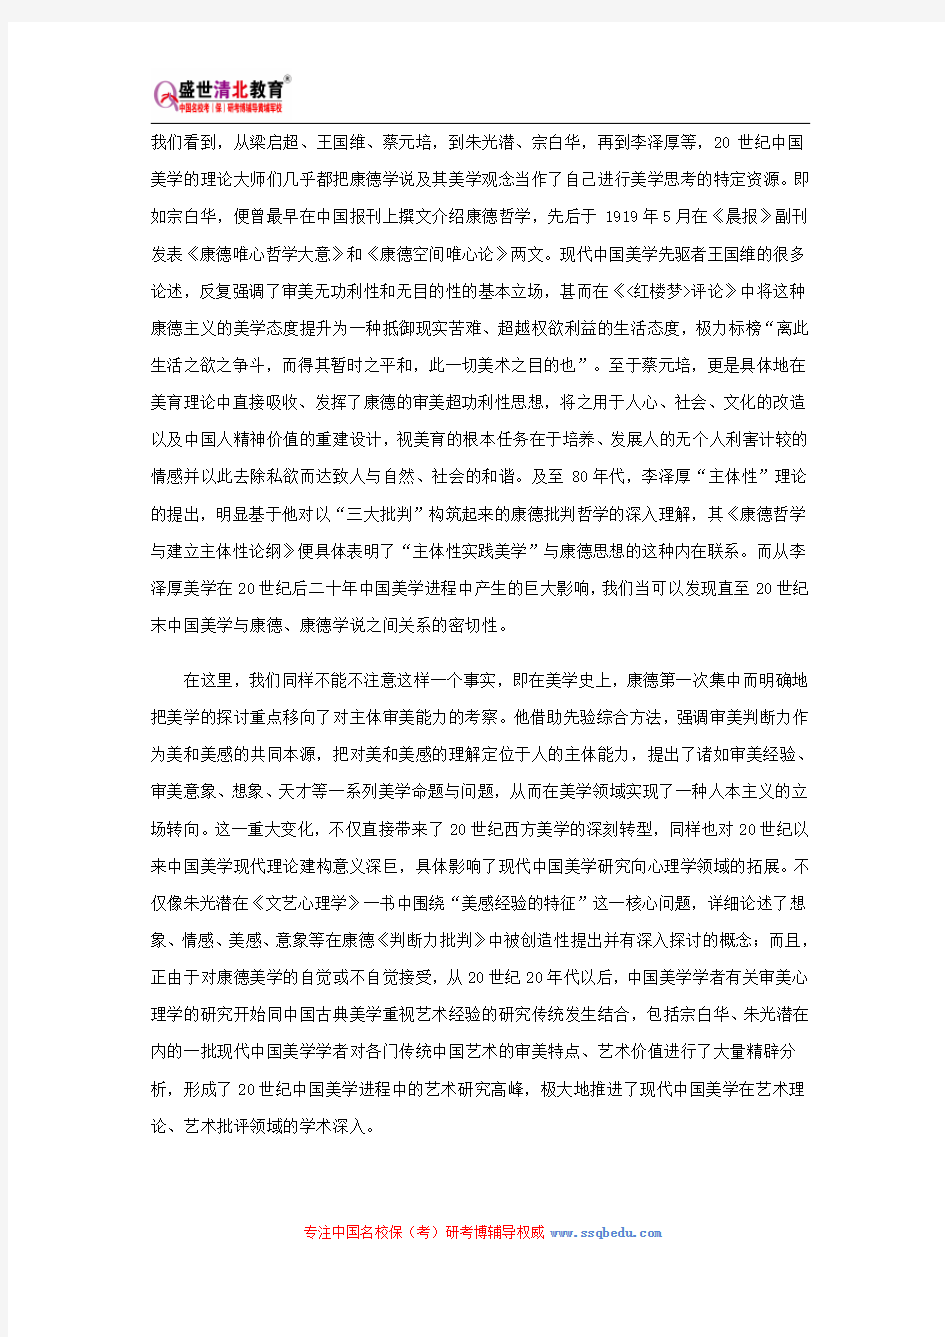 北京大学633中国美学(含中国哲学)考研参考书、历年真题、复试分数线